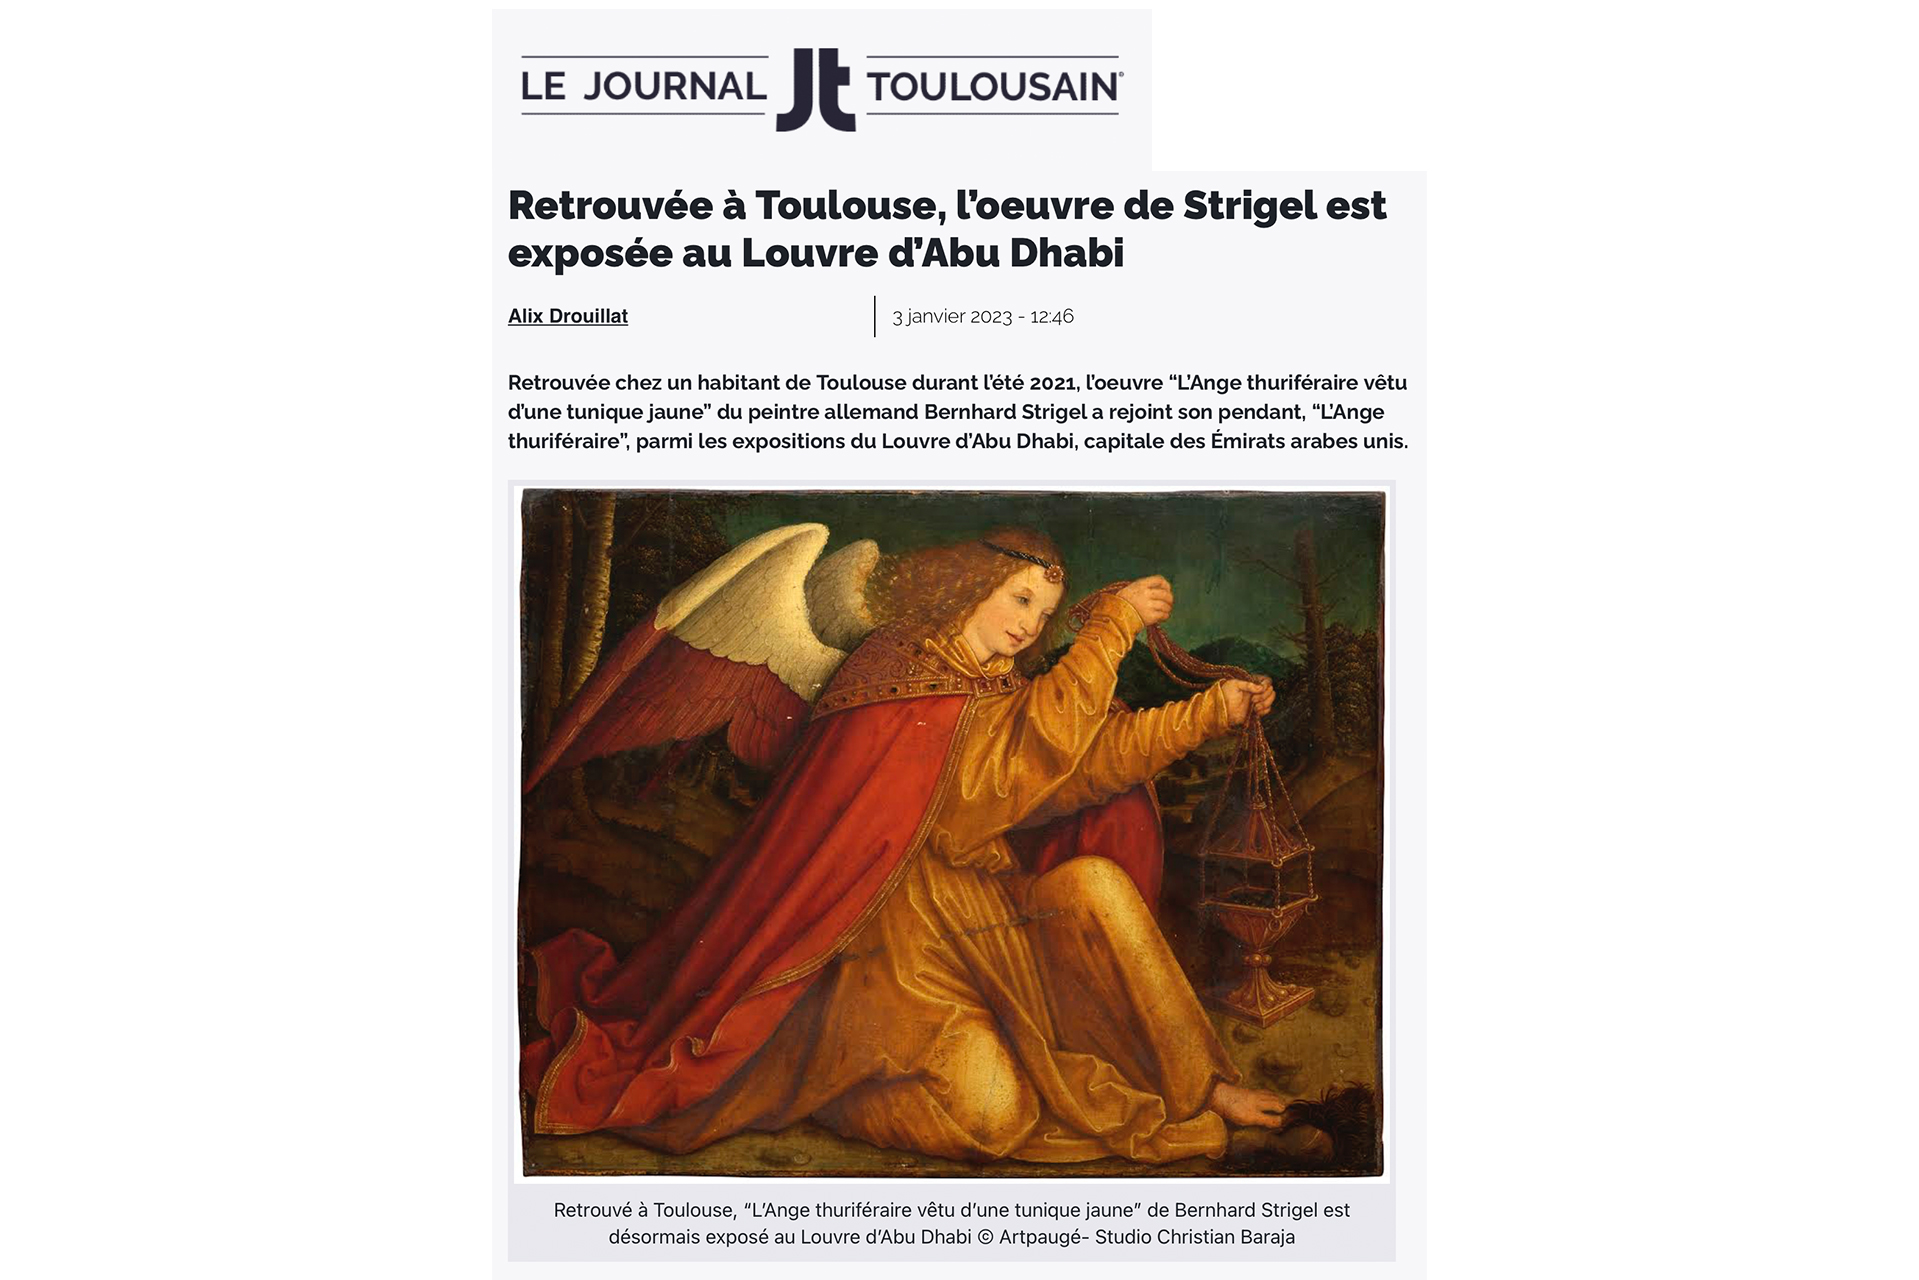 « Retrouvée à Toulouse, l’œuvre de Strigel est exposée au Louvre d’Abu Dhabi », 3 janvier 2023